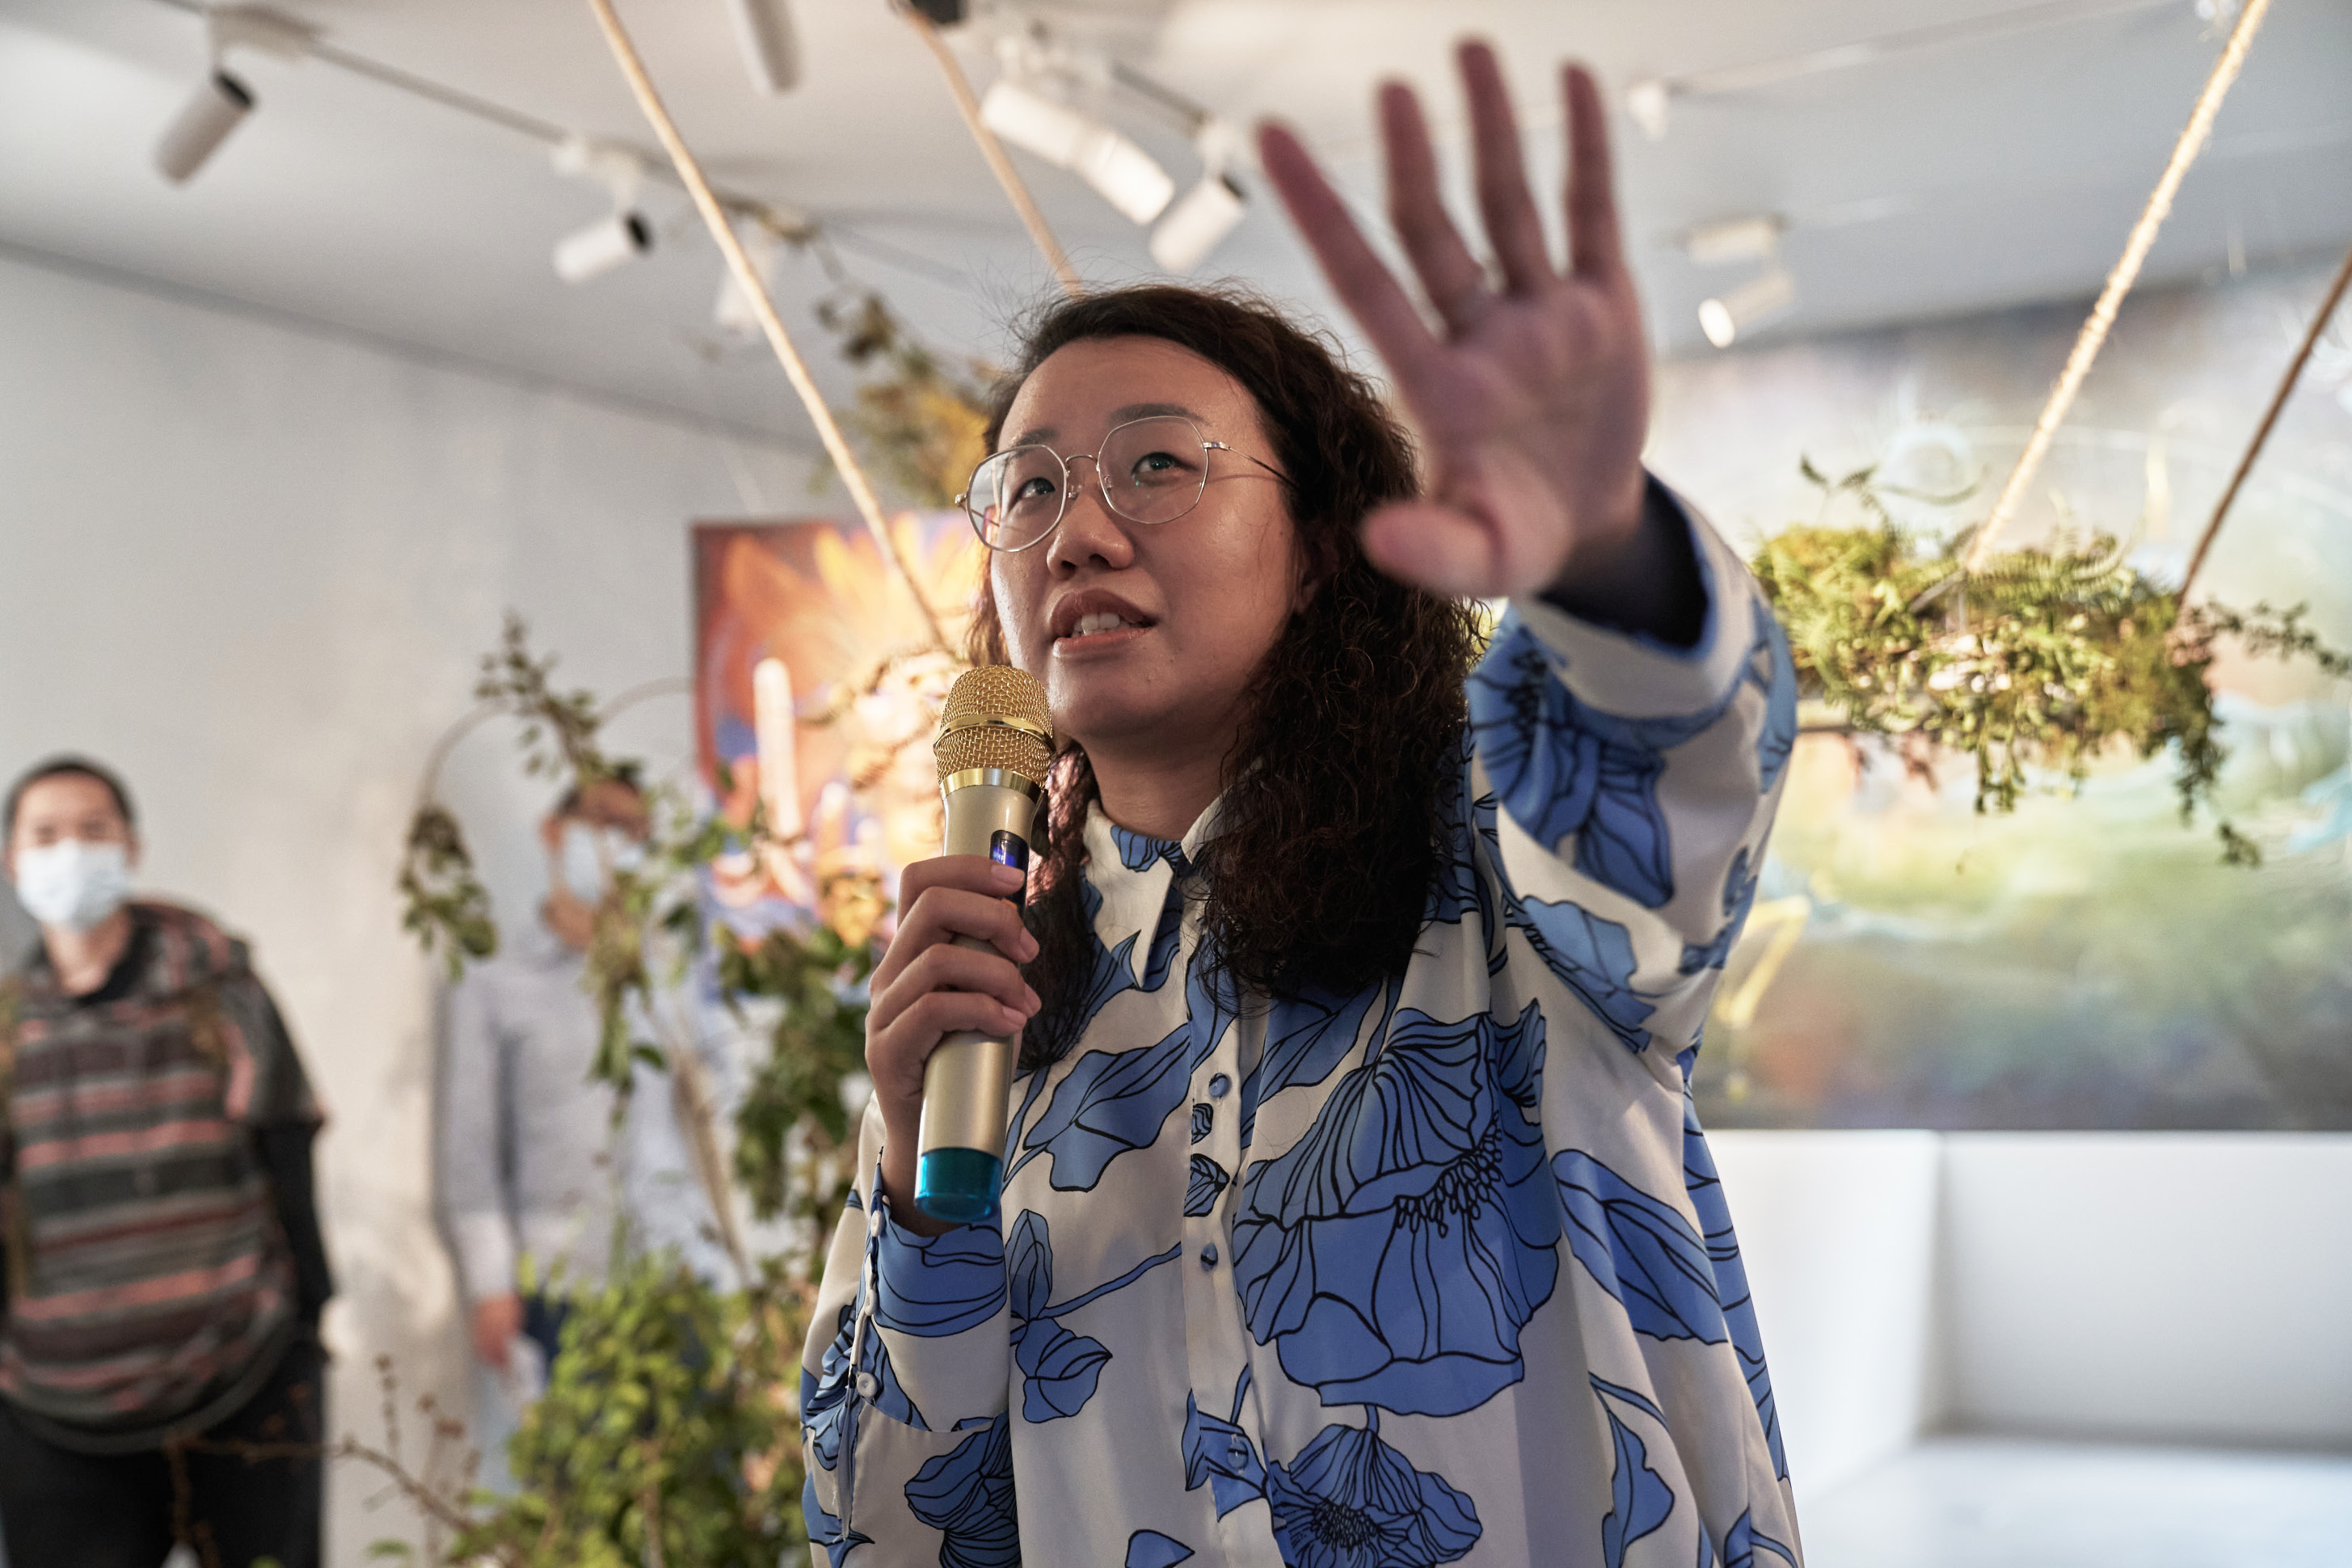 策 展 人 徐 若 宇 於 展 場 開 幕 為 大 家 導 賞 《 夜 間 旅 行 》 以 迷 幻 蘑 菇 儀 式 經 驗 為 核 心 ， 探 索 超 越 意 識 維 度 的 感 知 與 藝 術 表 現 。 攝 影 ／ 一 同 